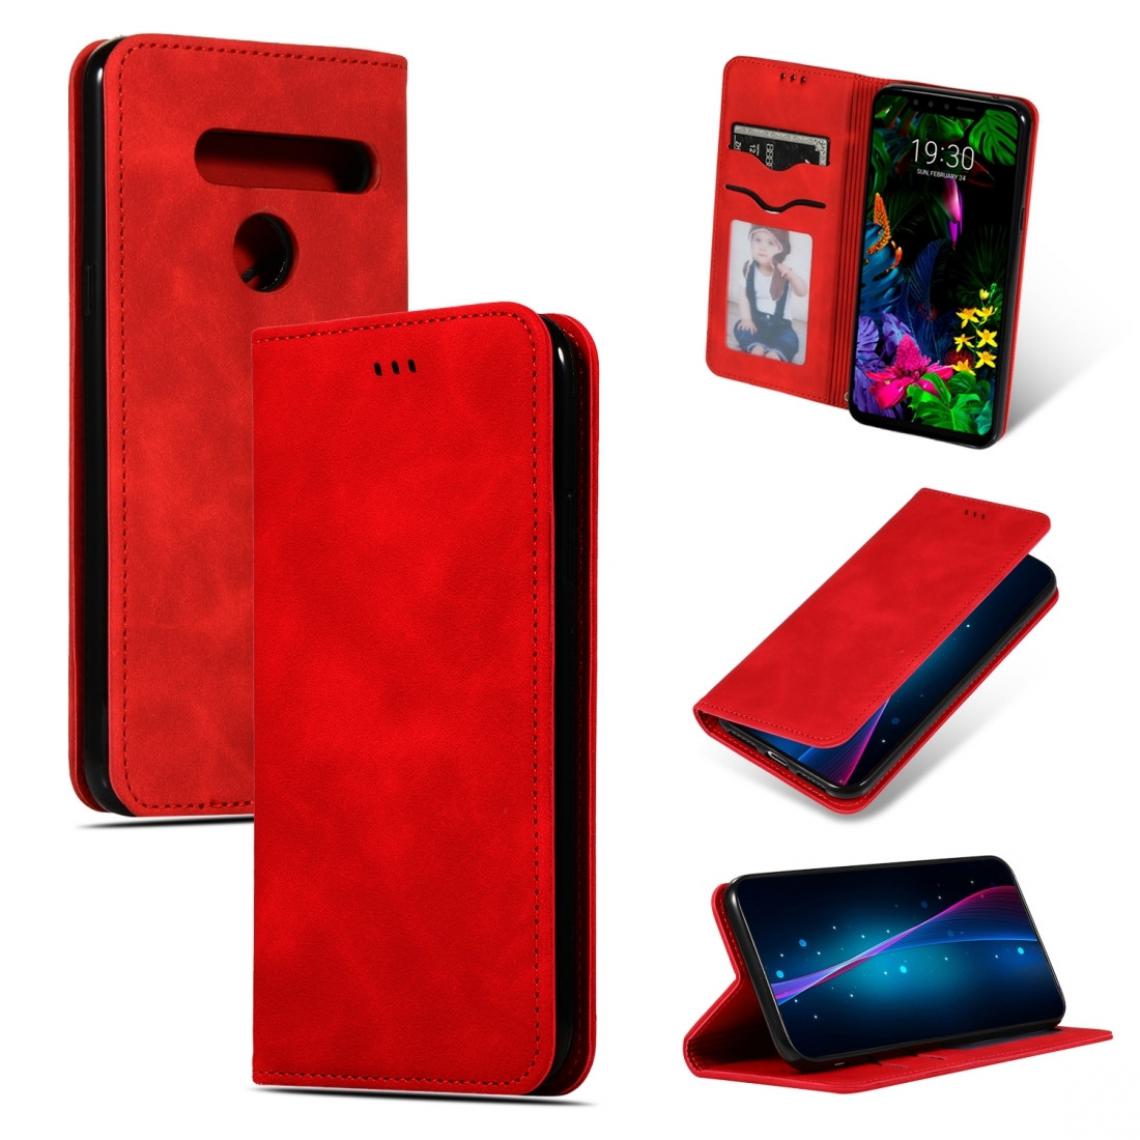 Wewoo - Housse Coque Etui en cuir avec rabat horizontal magnétique Business Skin Feel pour LG G8 / LG G8 ThinQ rouge - Coque, étui smartphone